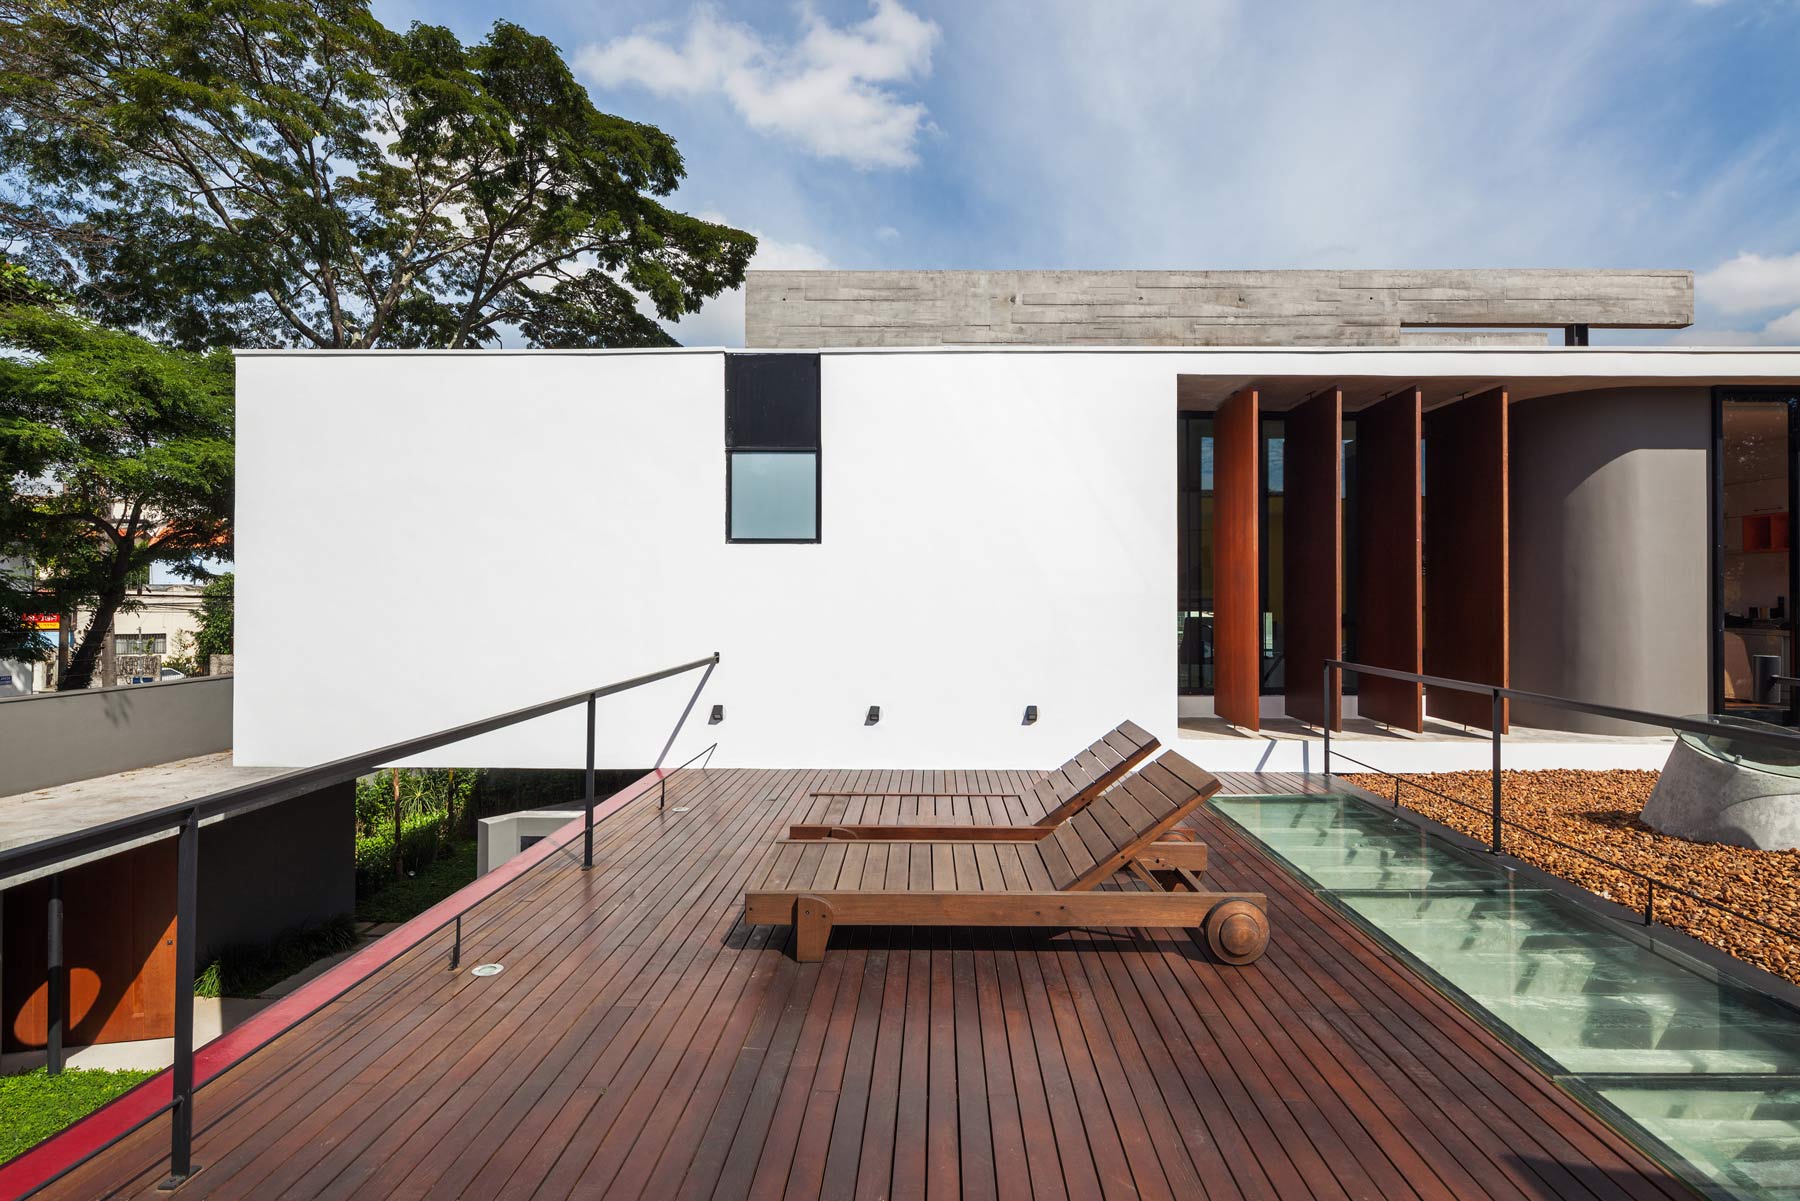 Záhradná terasa tvorí stropnú konštrukciu nad garážou a rekreačnou zónou. Ide o priestor s mnohonásobným využitím.